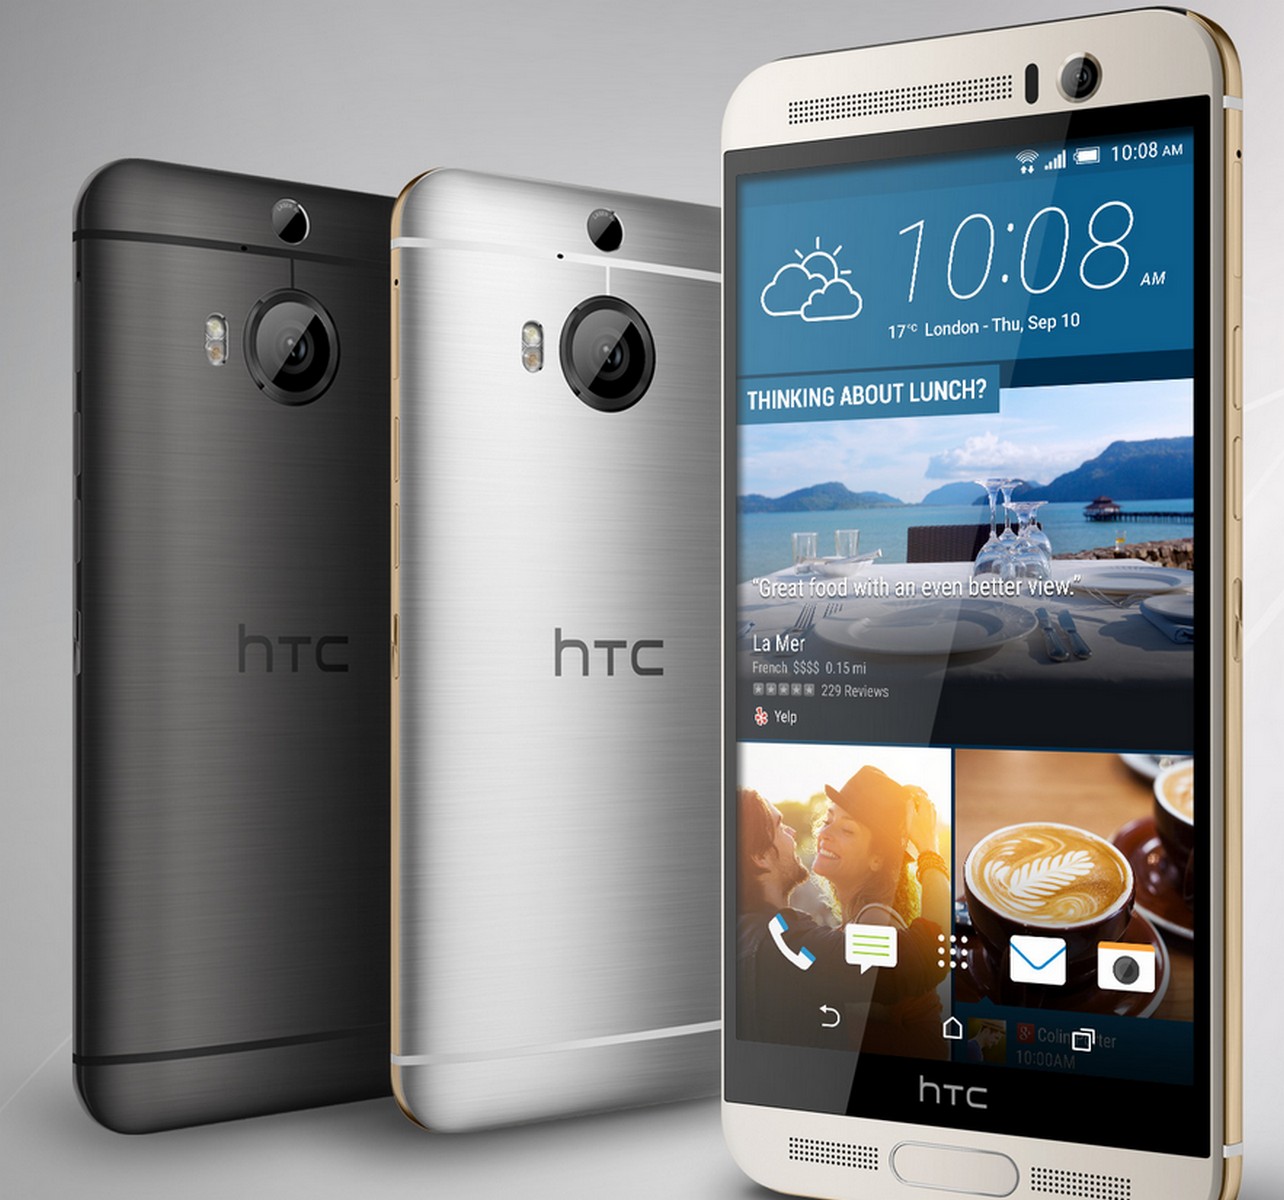 มาแปลก HTC ปรับสเปค HTC One M9+ อัพเกรดสเปคกล้อง แบบจัดหนัก (แต่ไม่ออกรุ่นใหม่นะ)